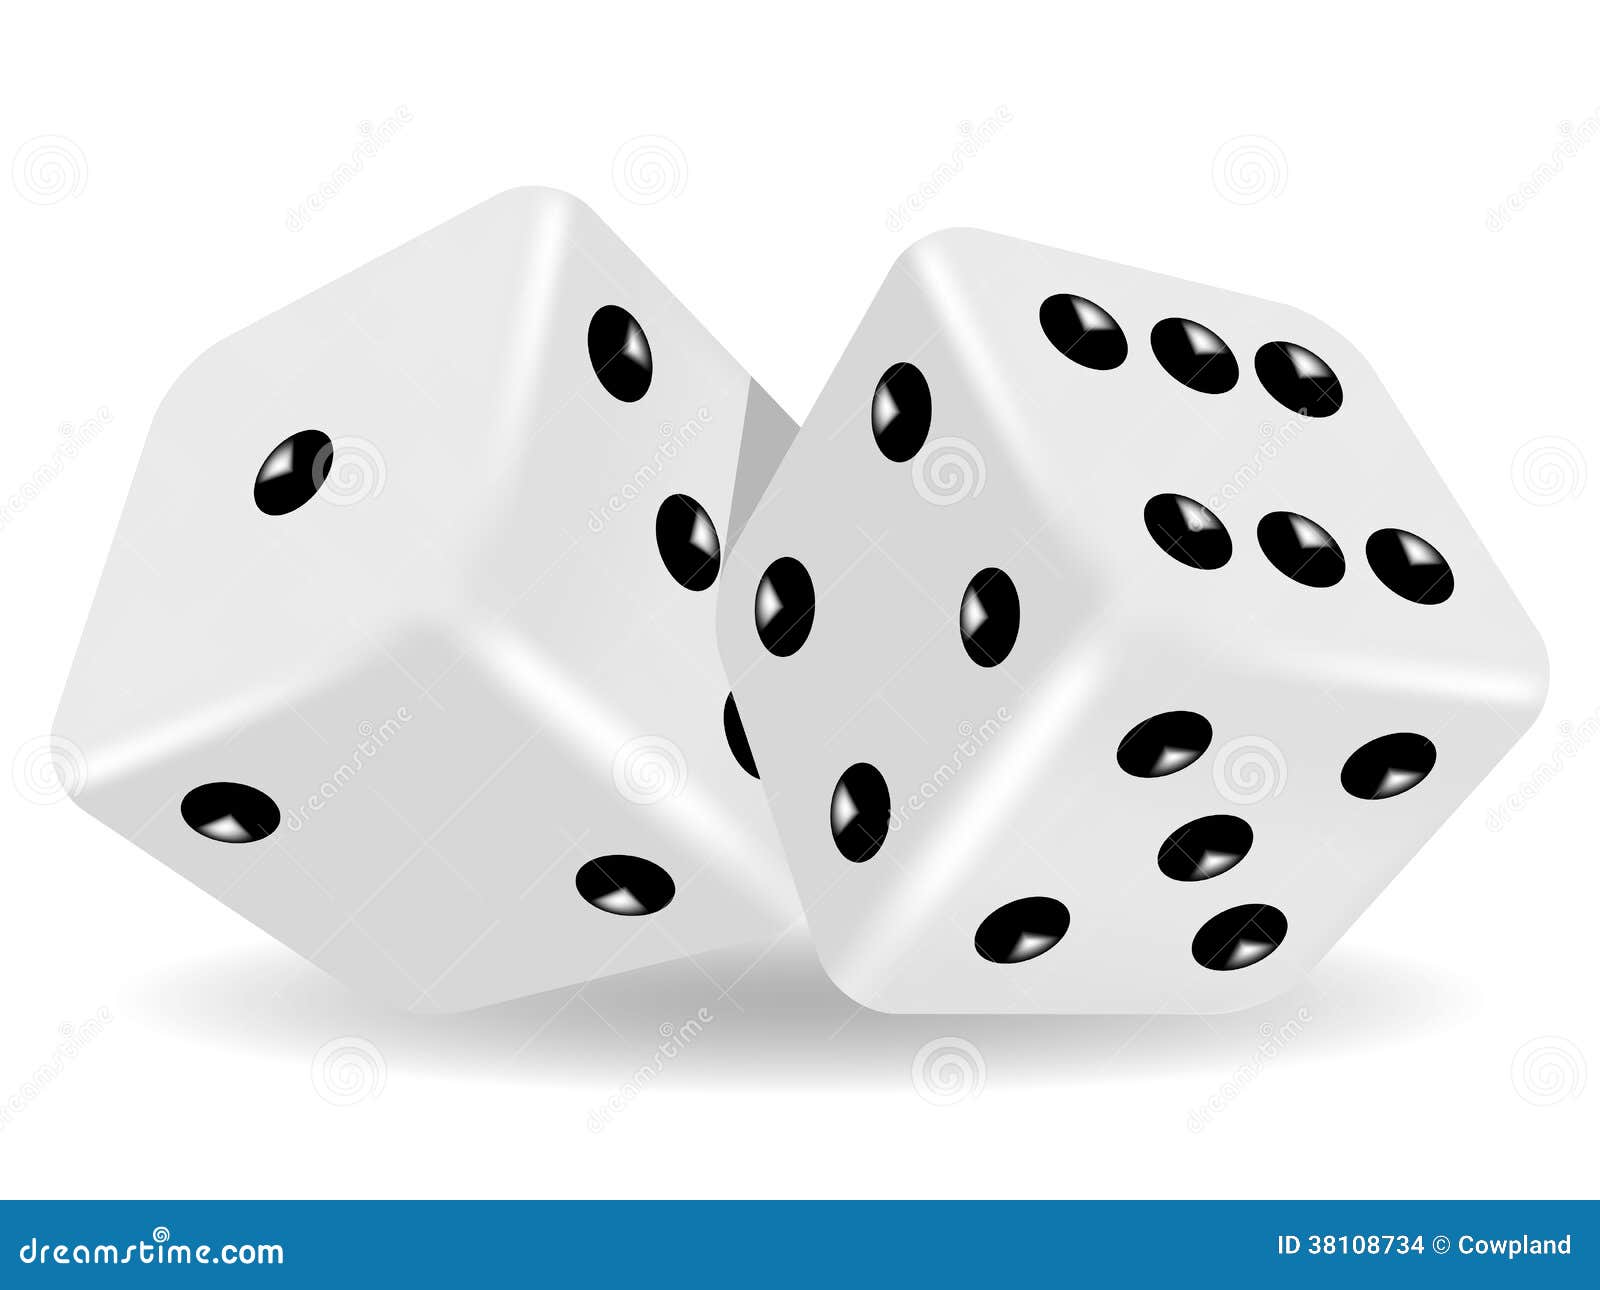 Juegos de azar y probabilidad ranking casino Lanús - 78623